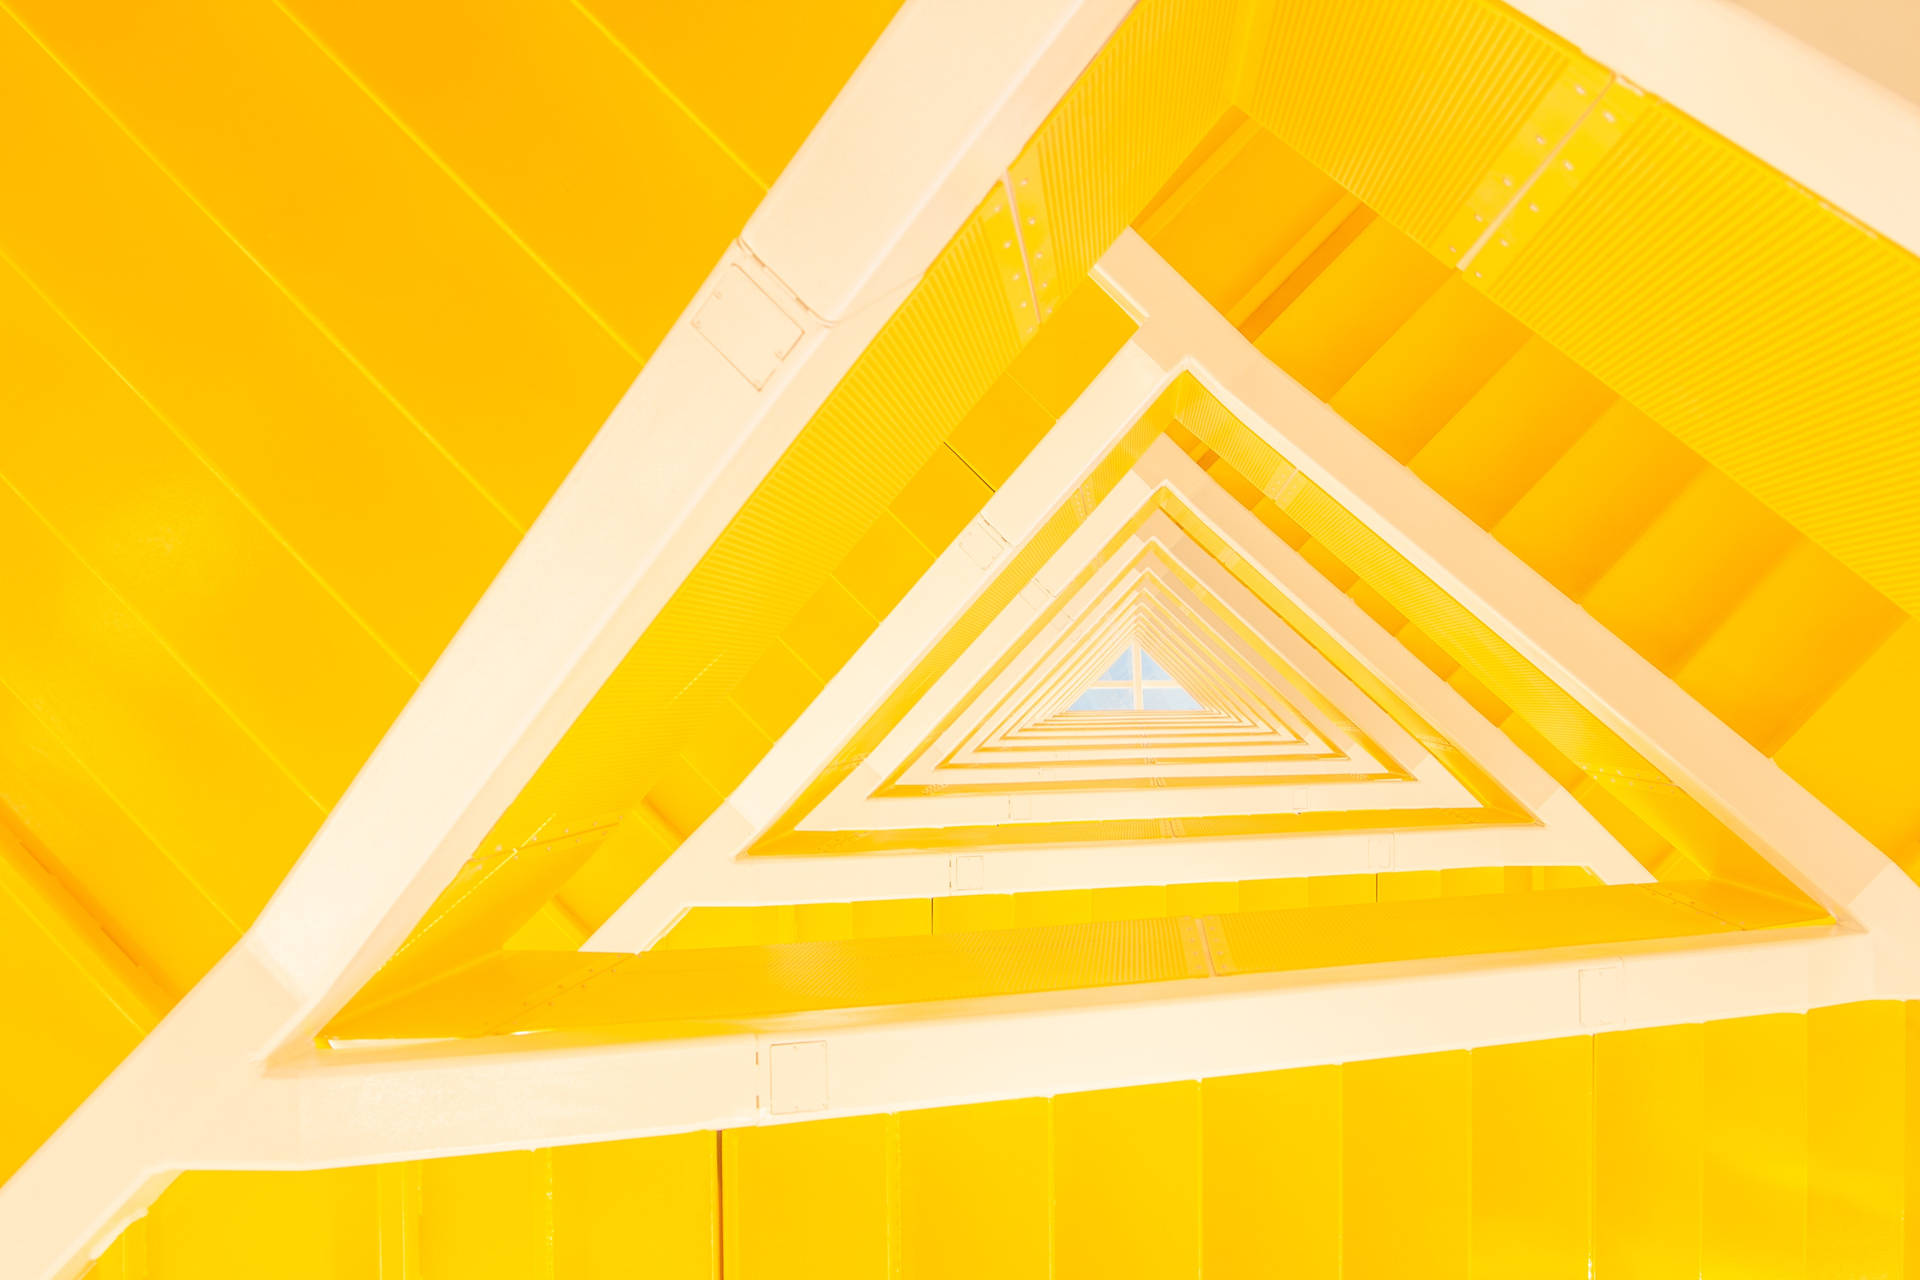 Iphone Home Screen Triangular Yellow Stairs